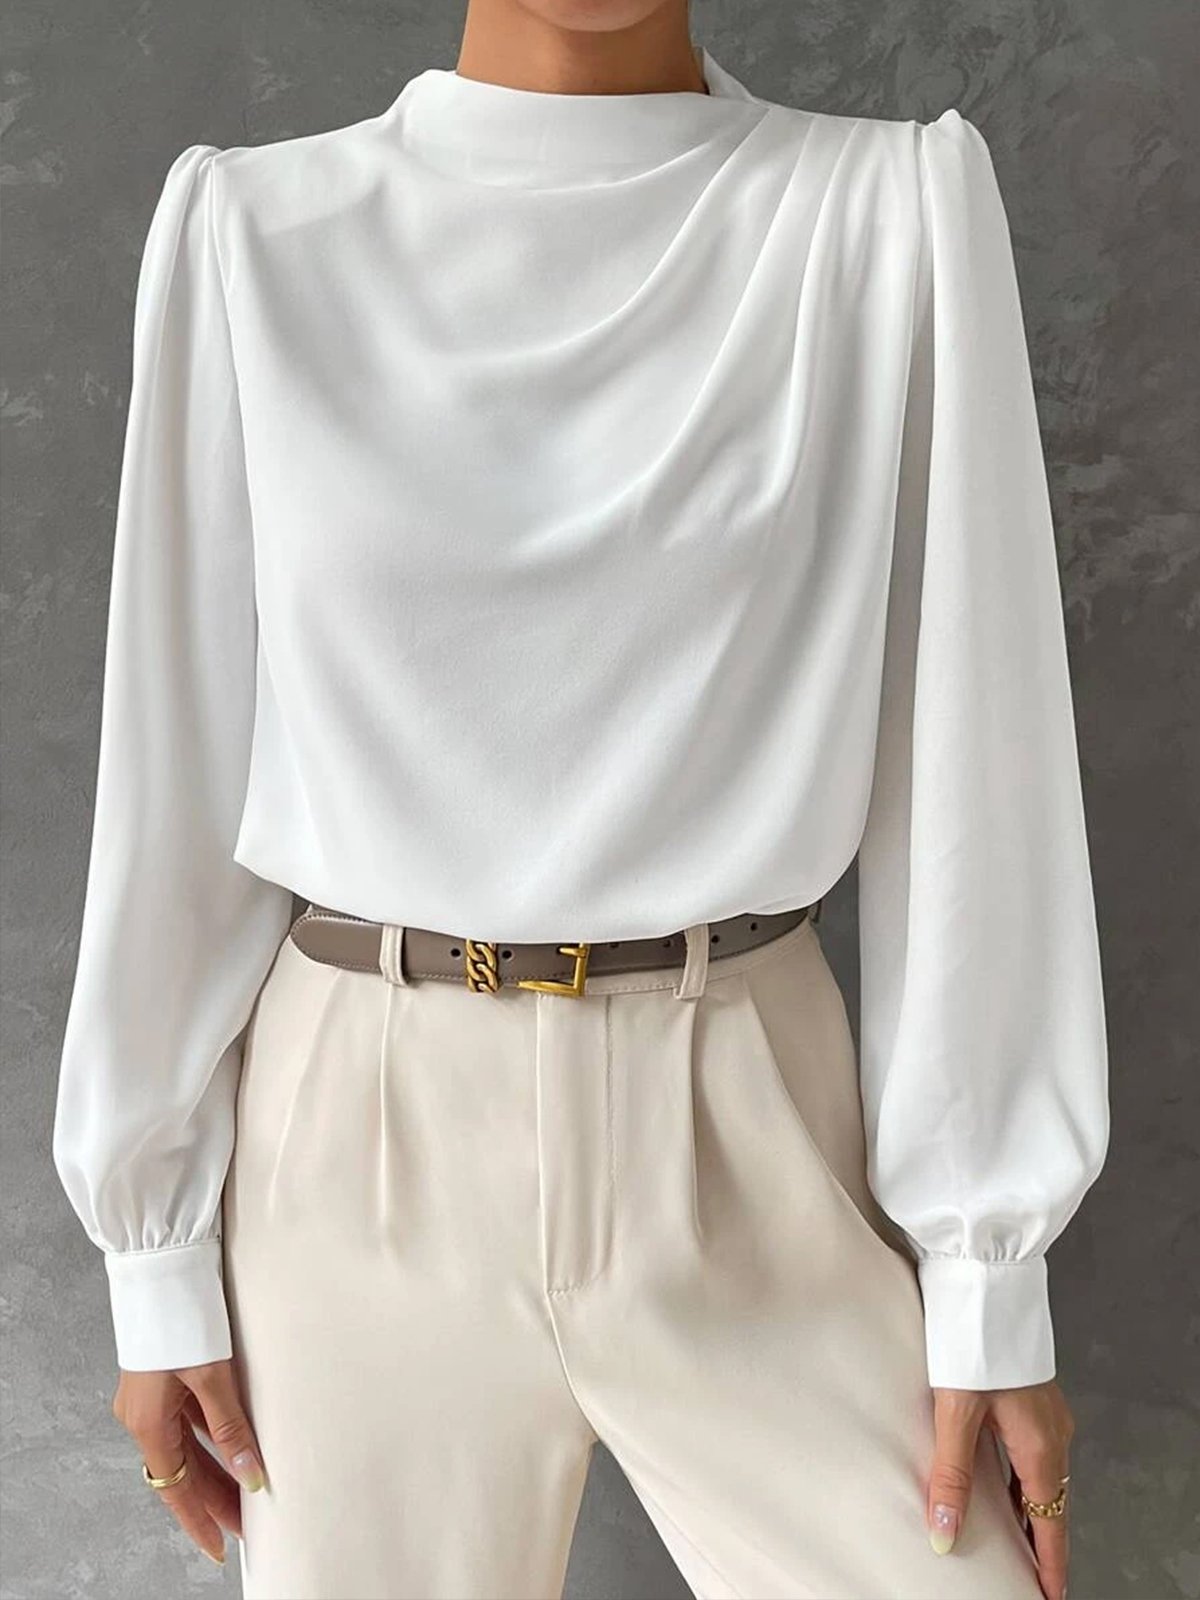 Stehkragen Elegant Unifarben Regelmäßige Passform Bluse